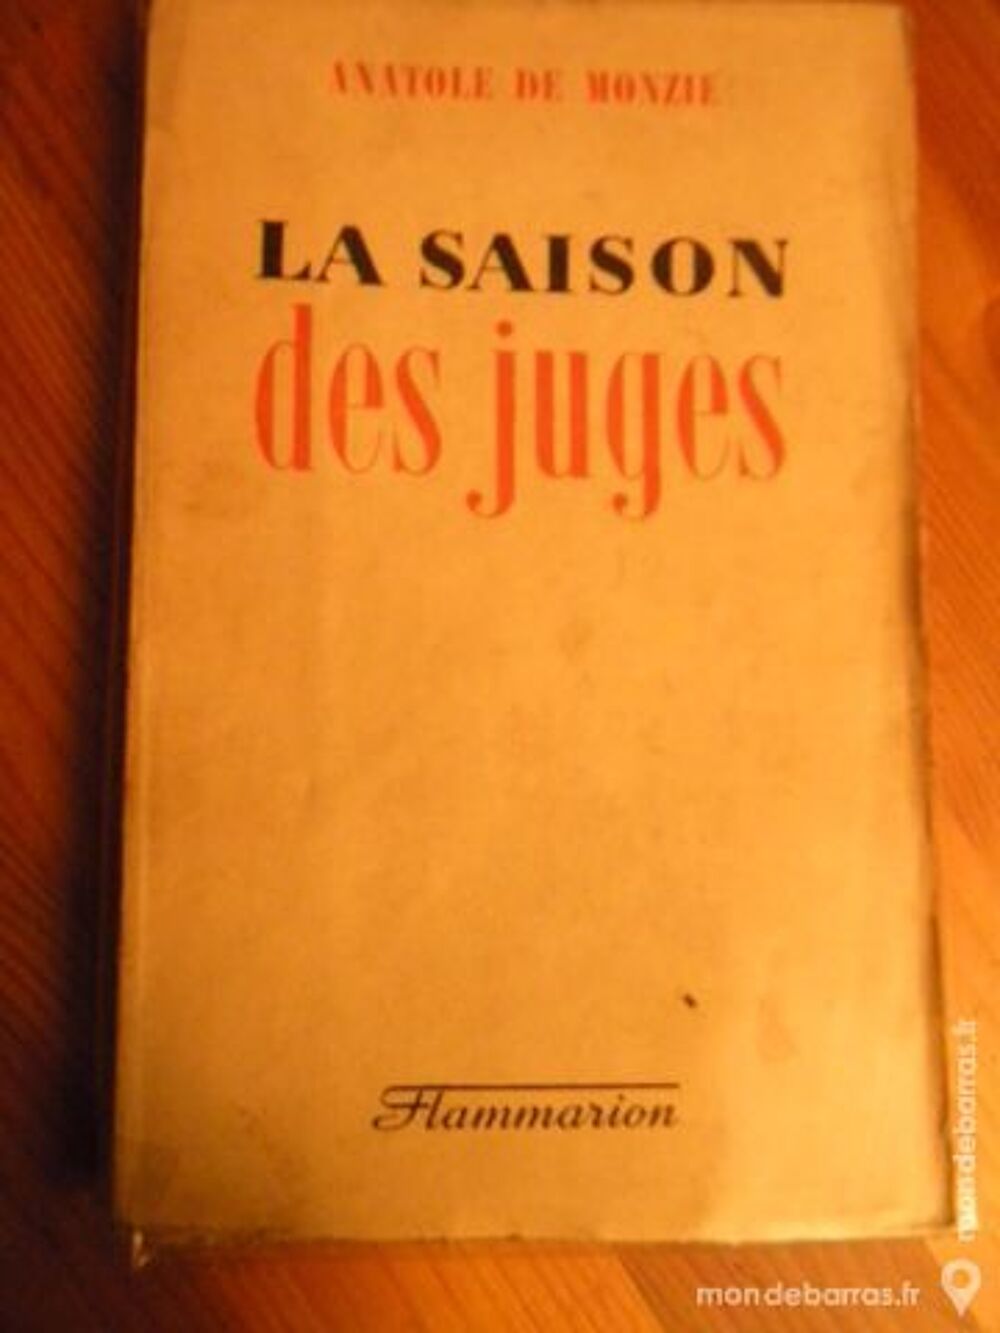 La Saison des Juges de Anatole de Monzie - 1943 Livres et BD